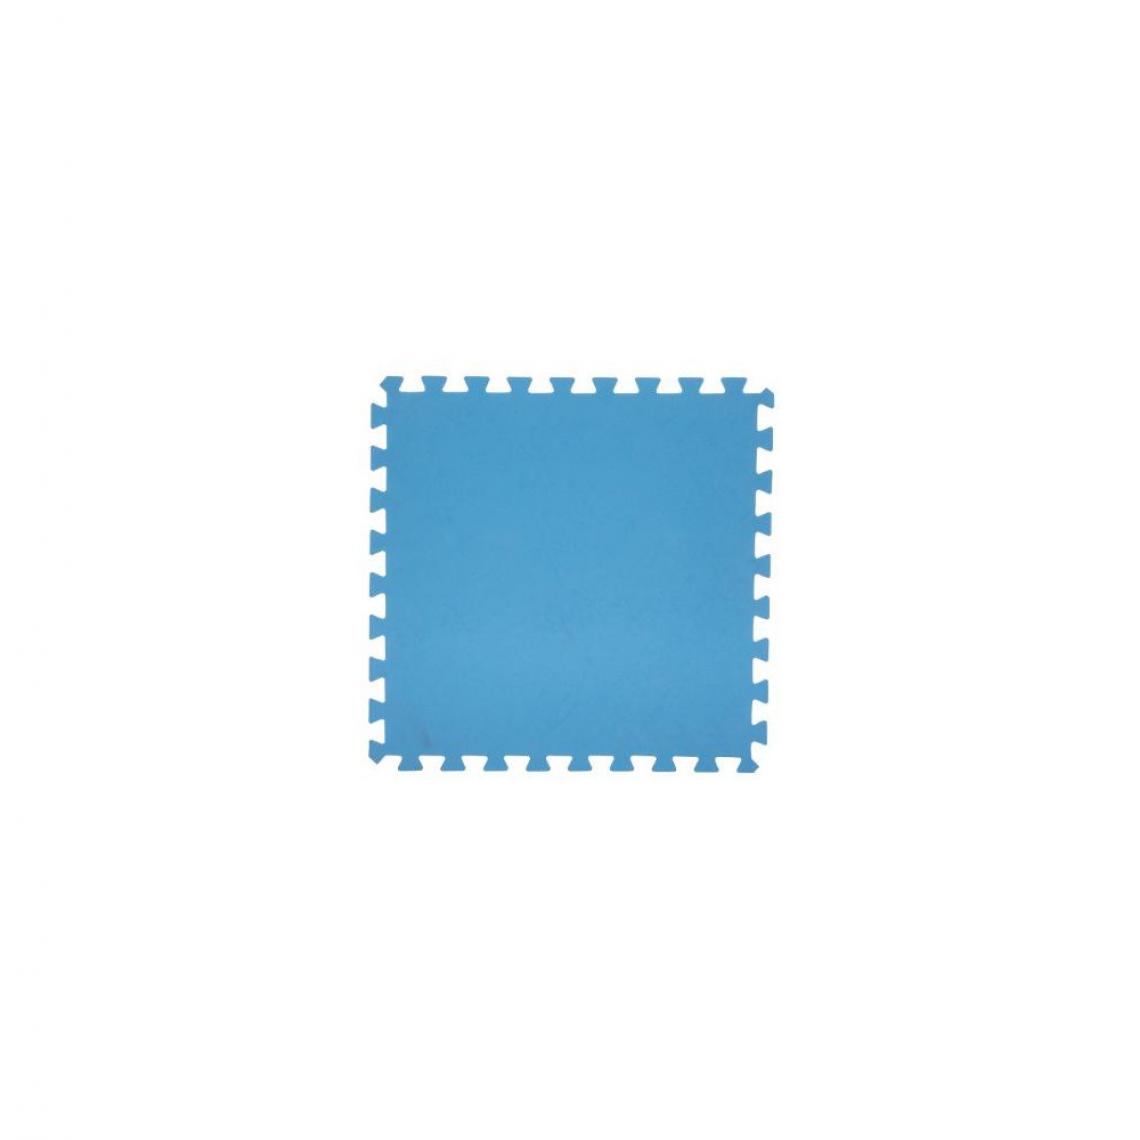 Ac-Deco - Lot de 8 dalles de sol modulables - Piscine - 50 x 50 cm - Bleu - Tapis